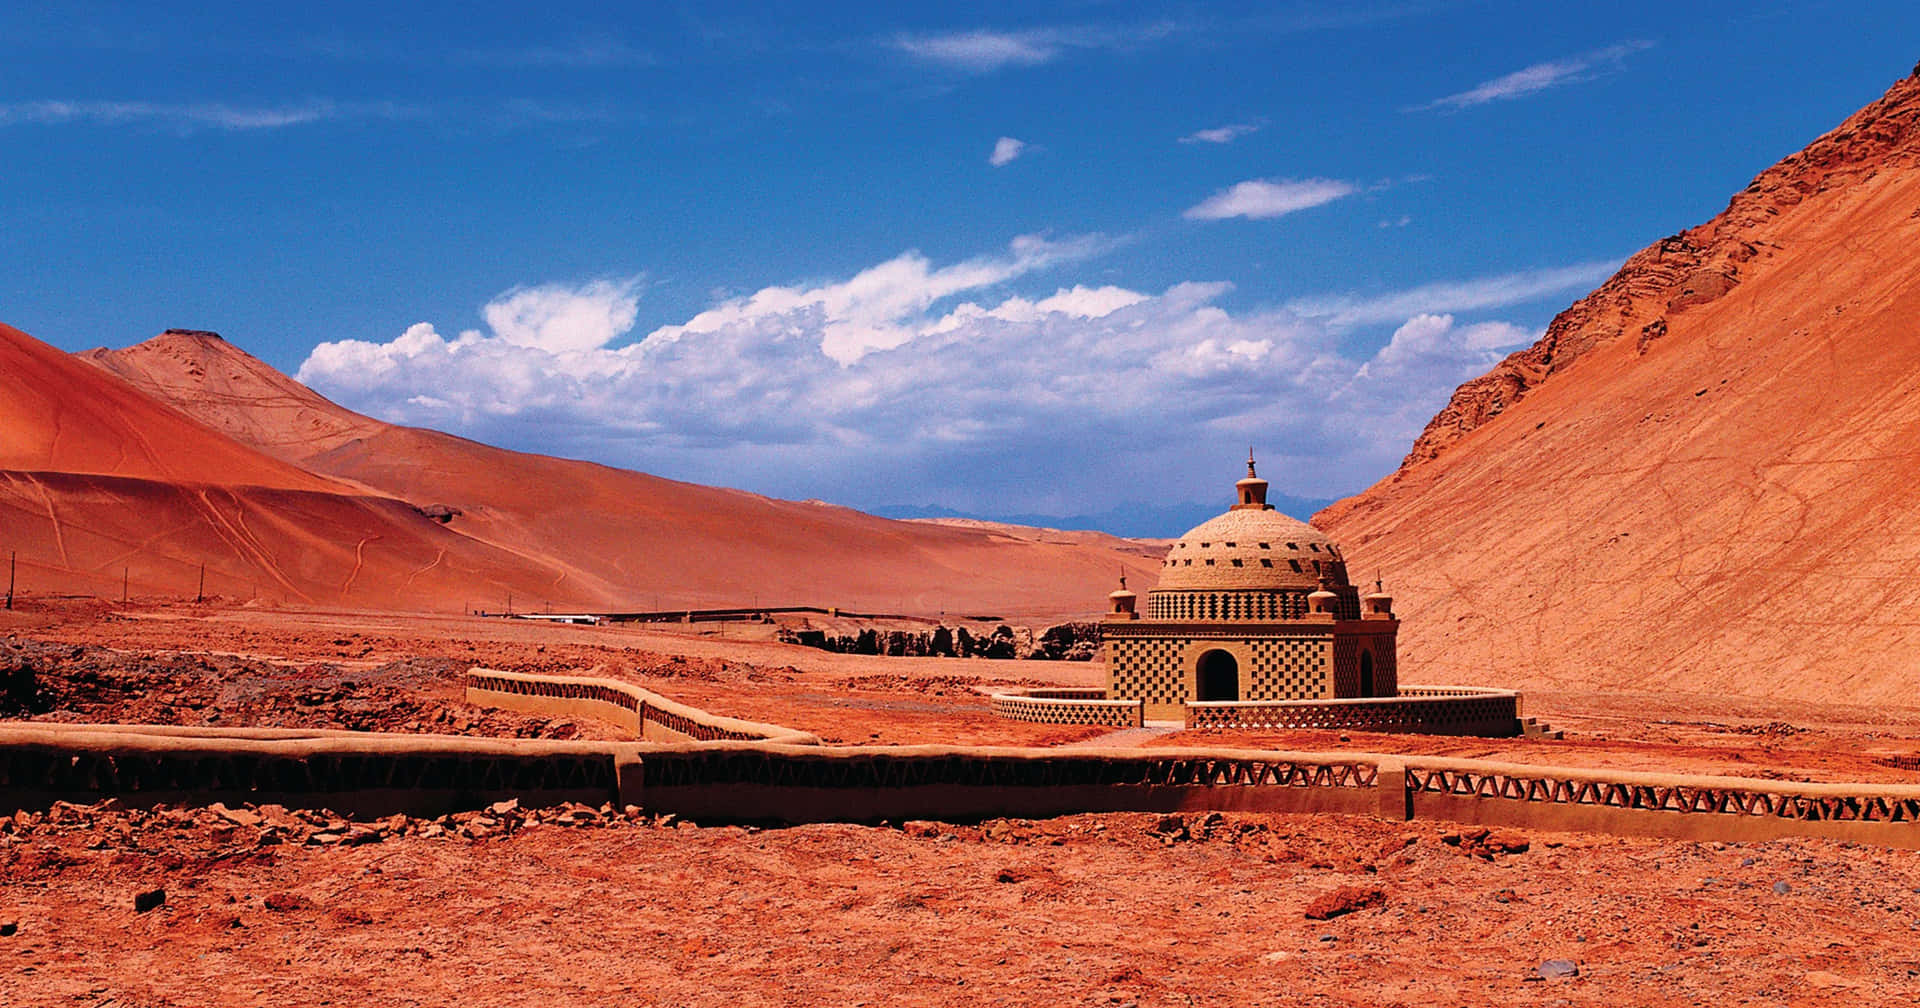 Einkleines Gebäude In Der Wüste